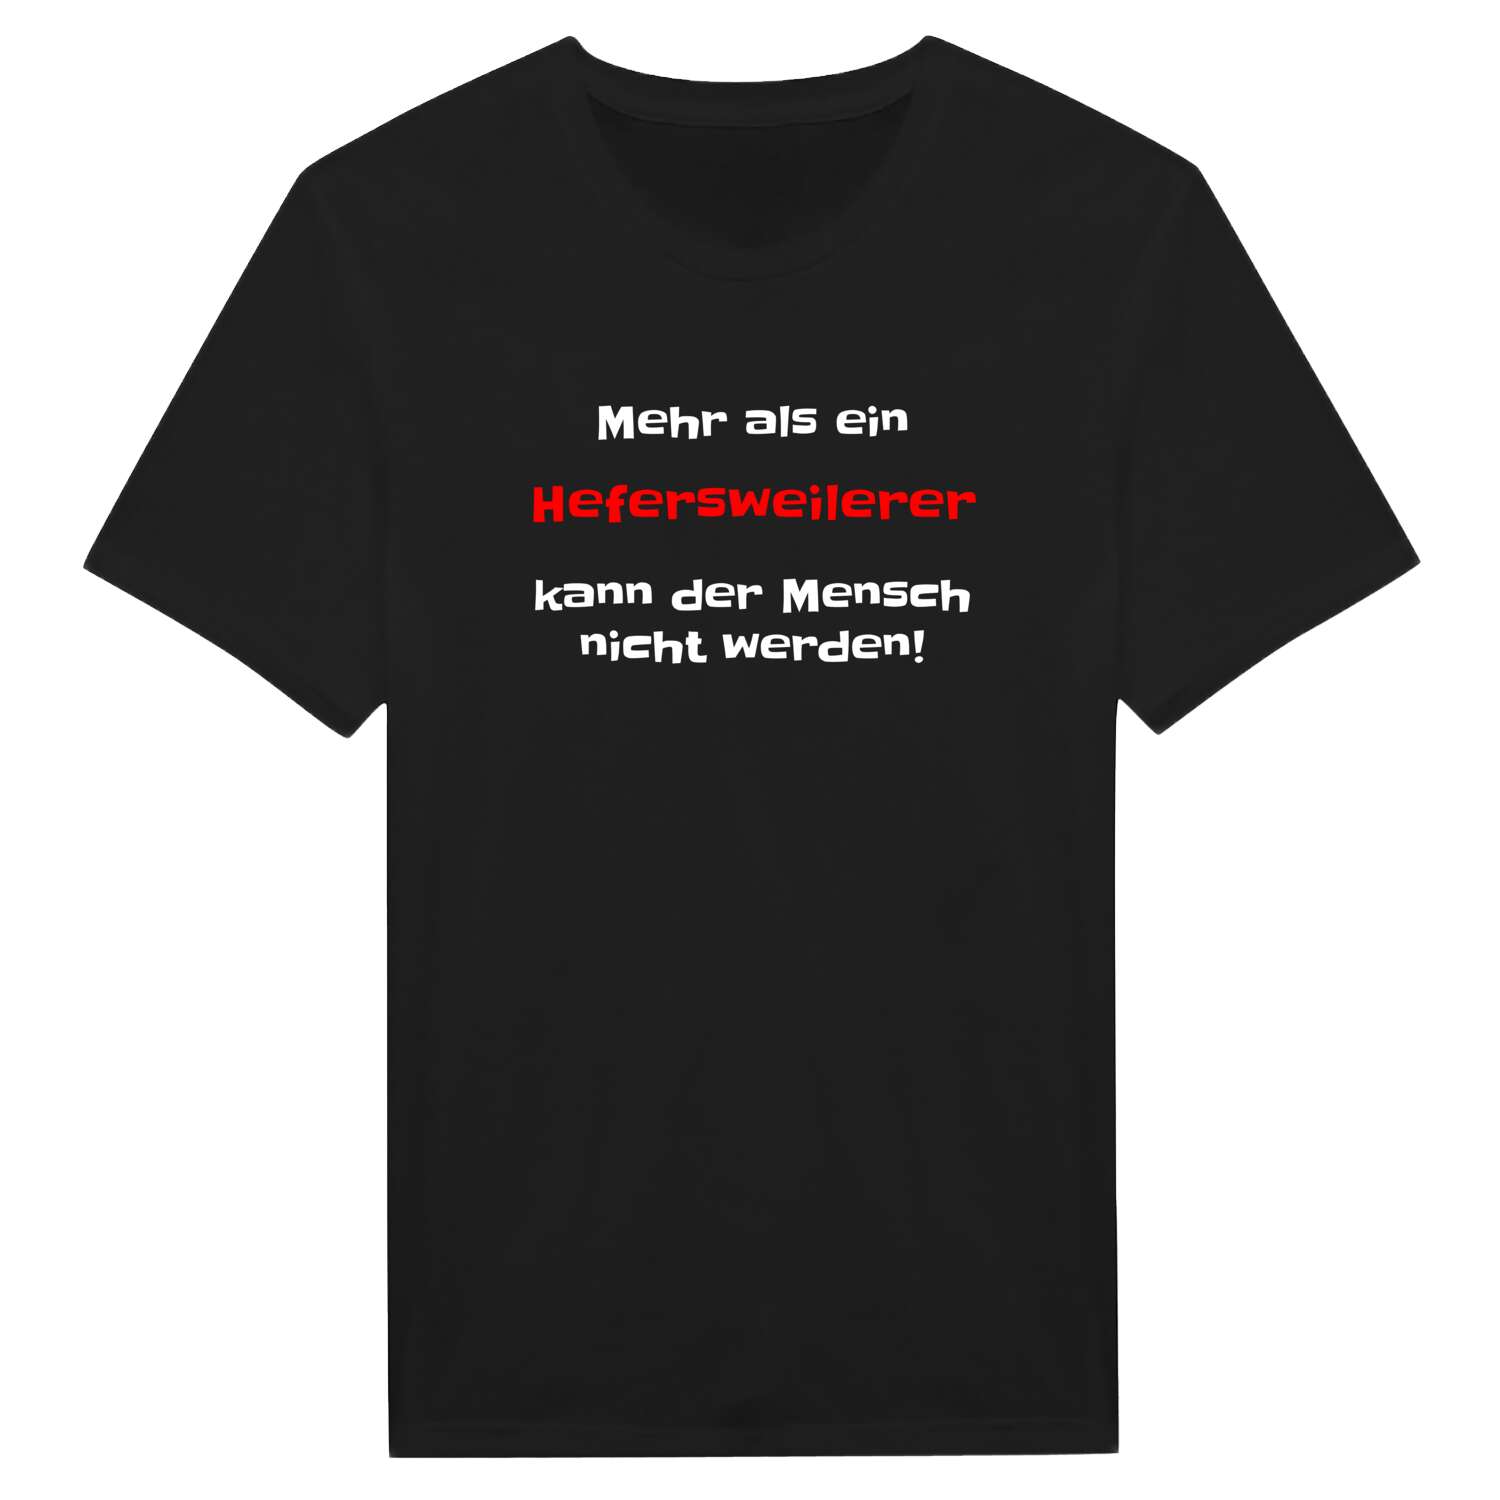 Hefersweiler T-Shirt »Mehr als ein«